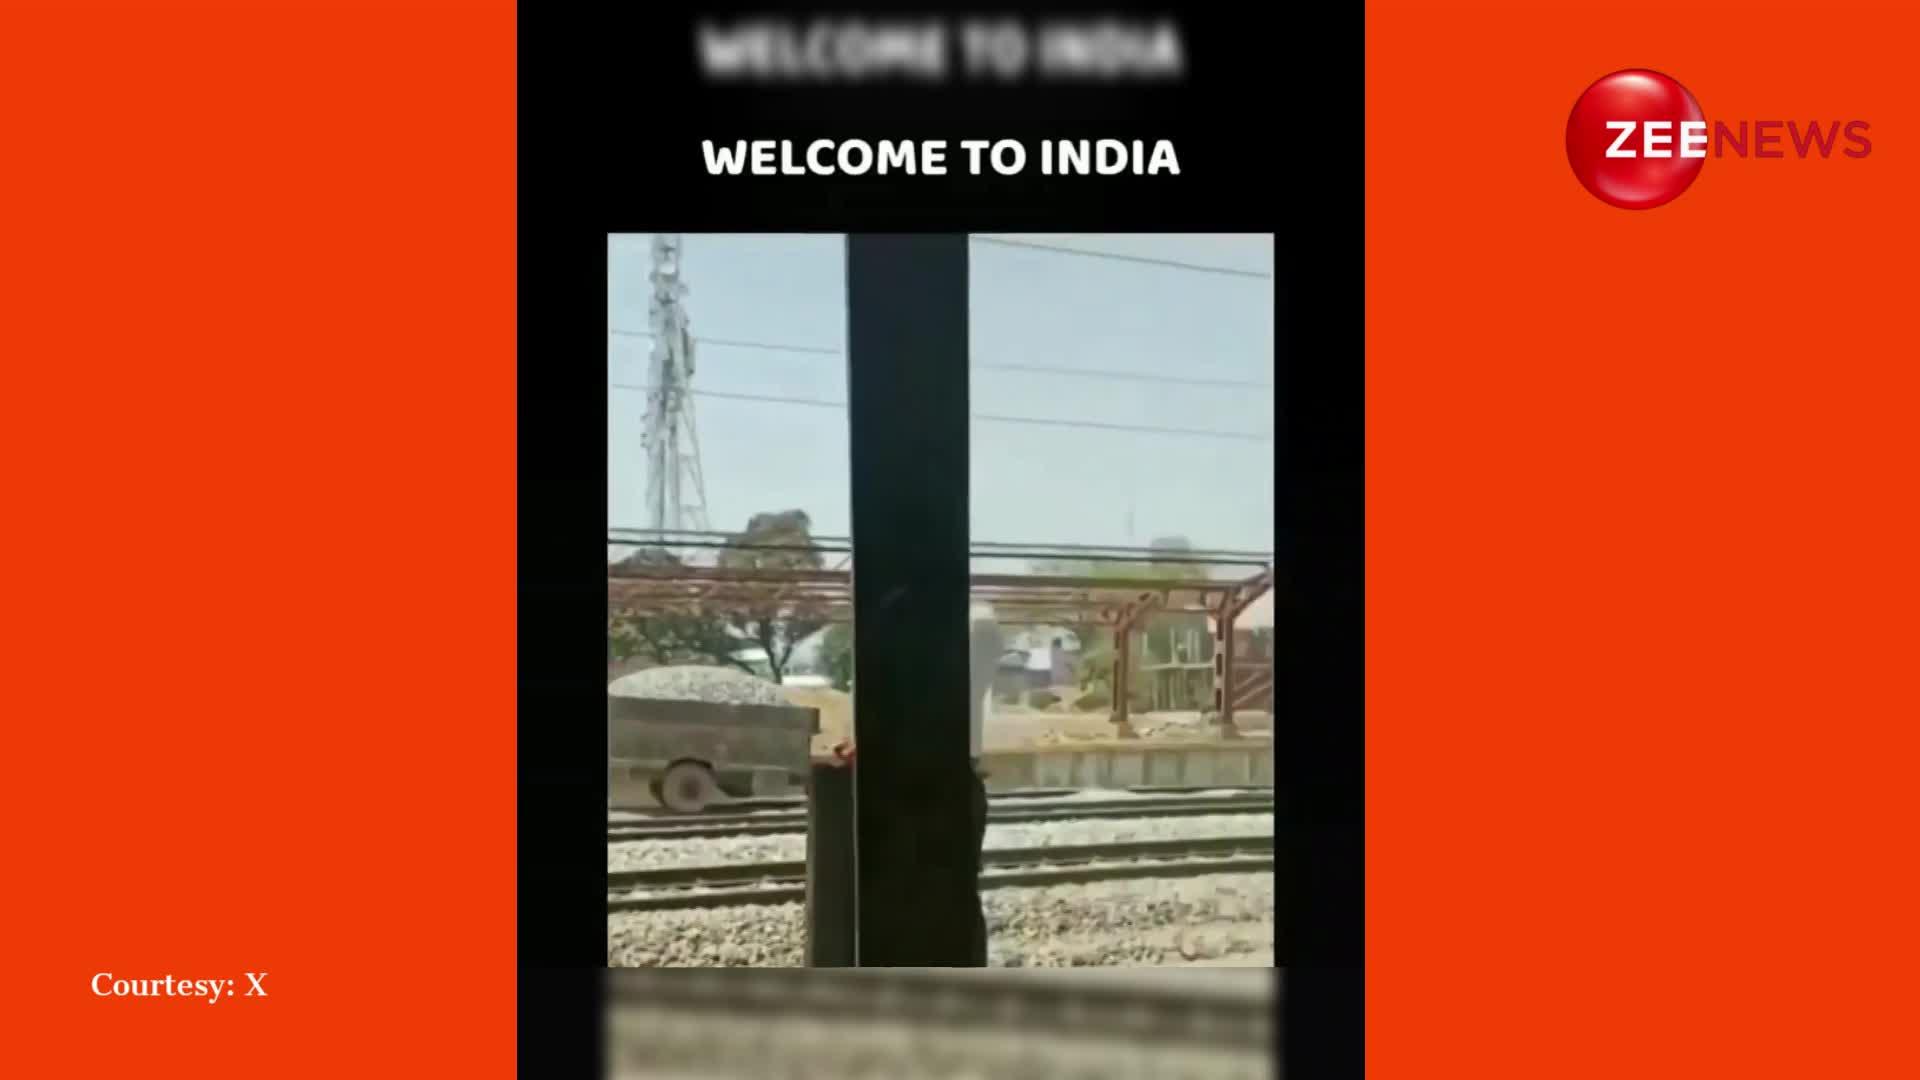 ट्रैक्टर को रेल की पटरियों पर दौड़ाता दिखा शख्स, देख लोग बोले- इंडिया में आपका स्वागत है!